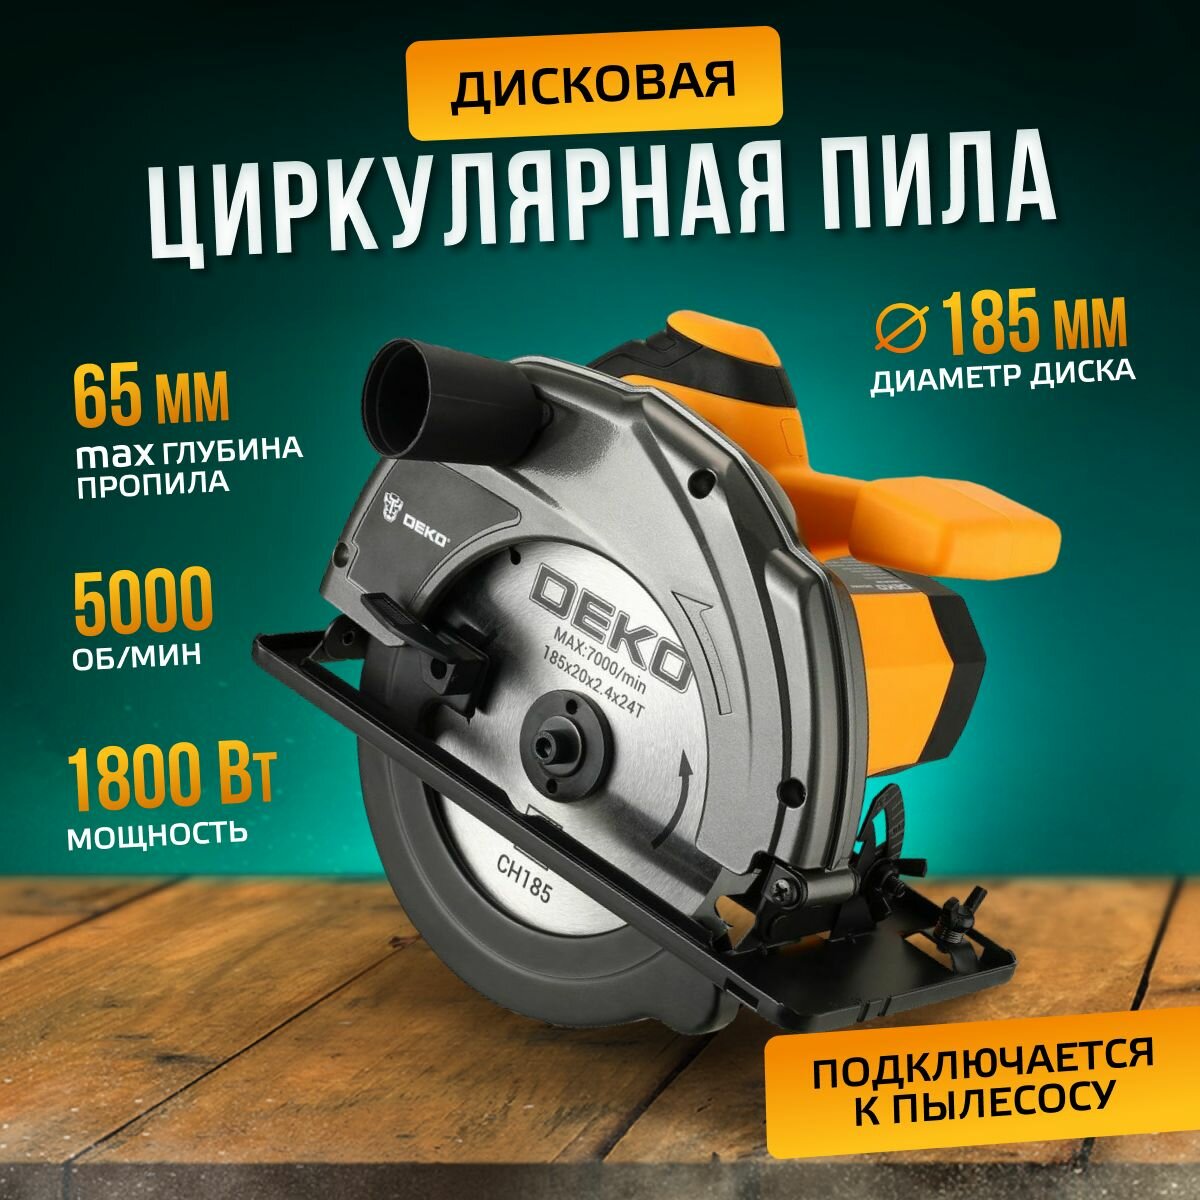 Дисковая циркулярная пила DEKO DKCS1800 мощность 1800Вт 185мм диск 5000 об/мин возможность работы с направляющей шиной